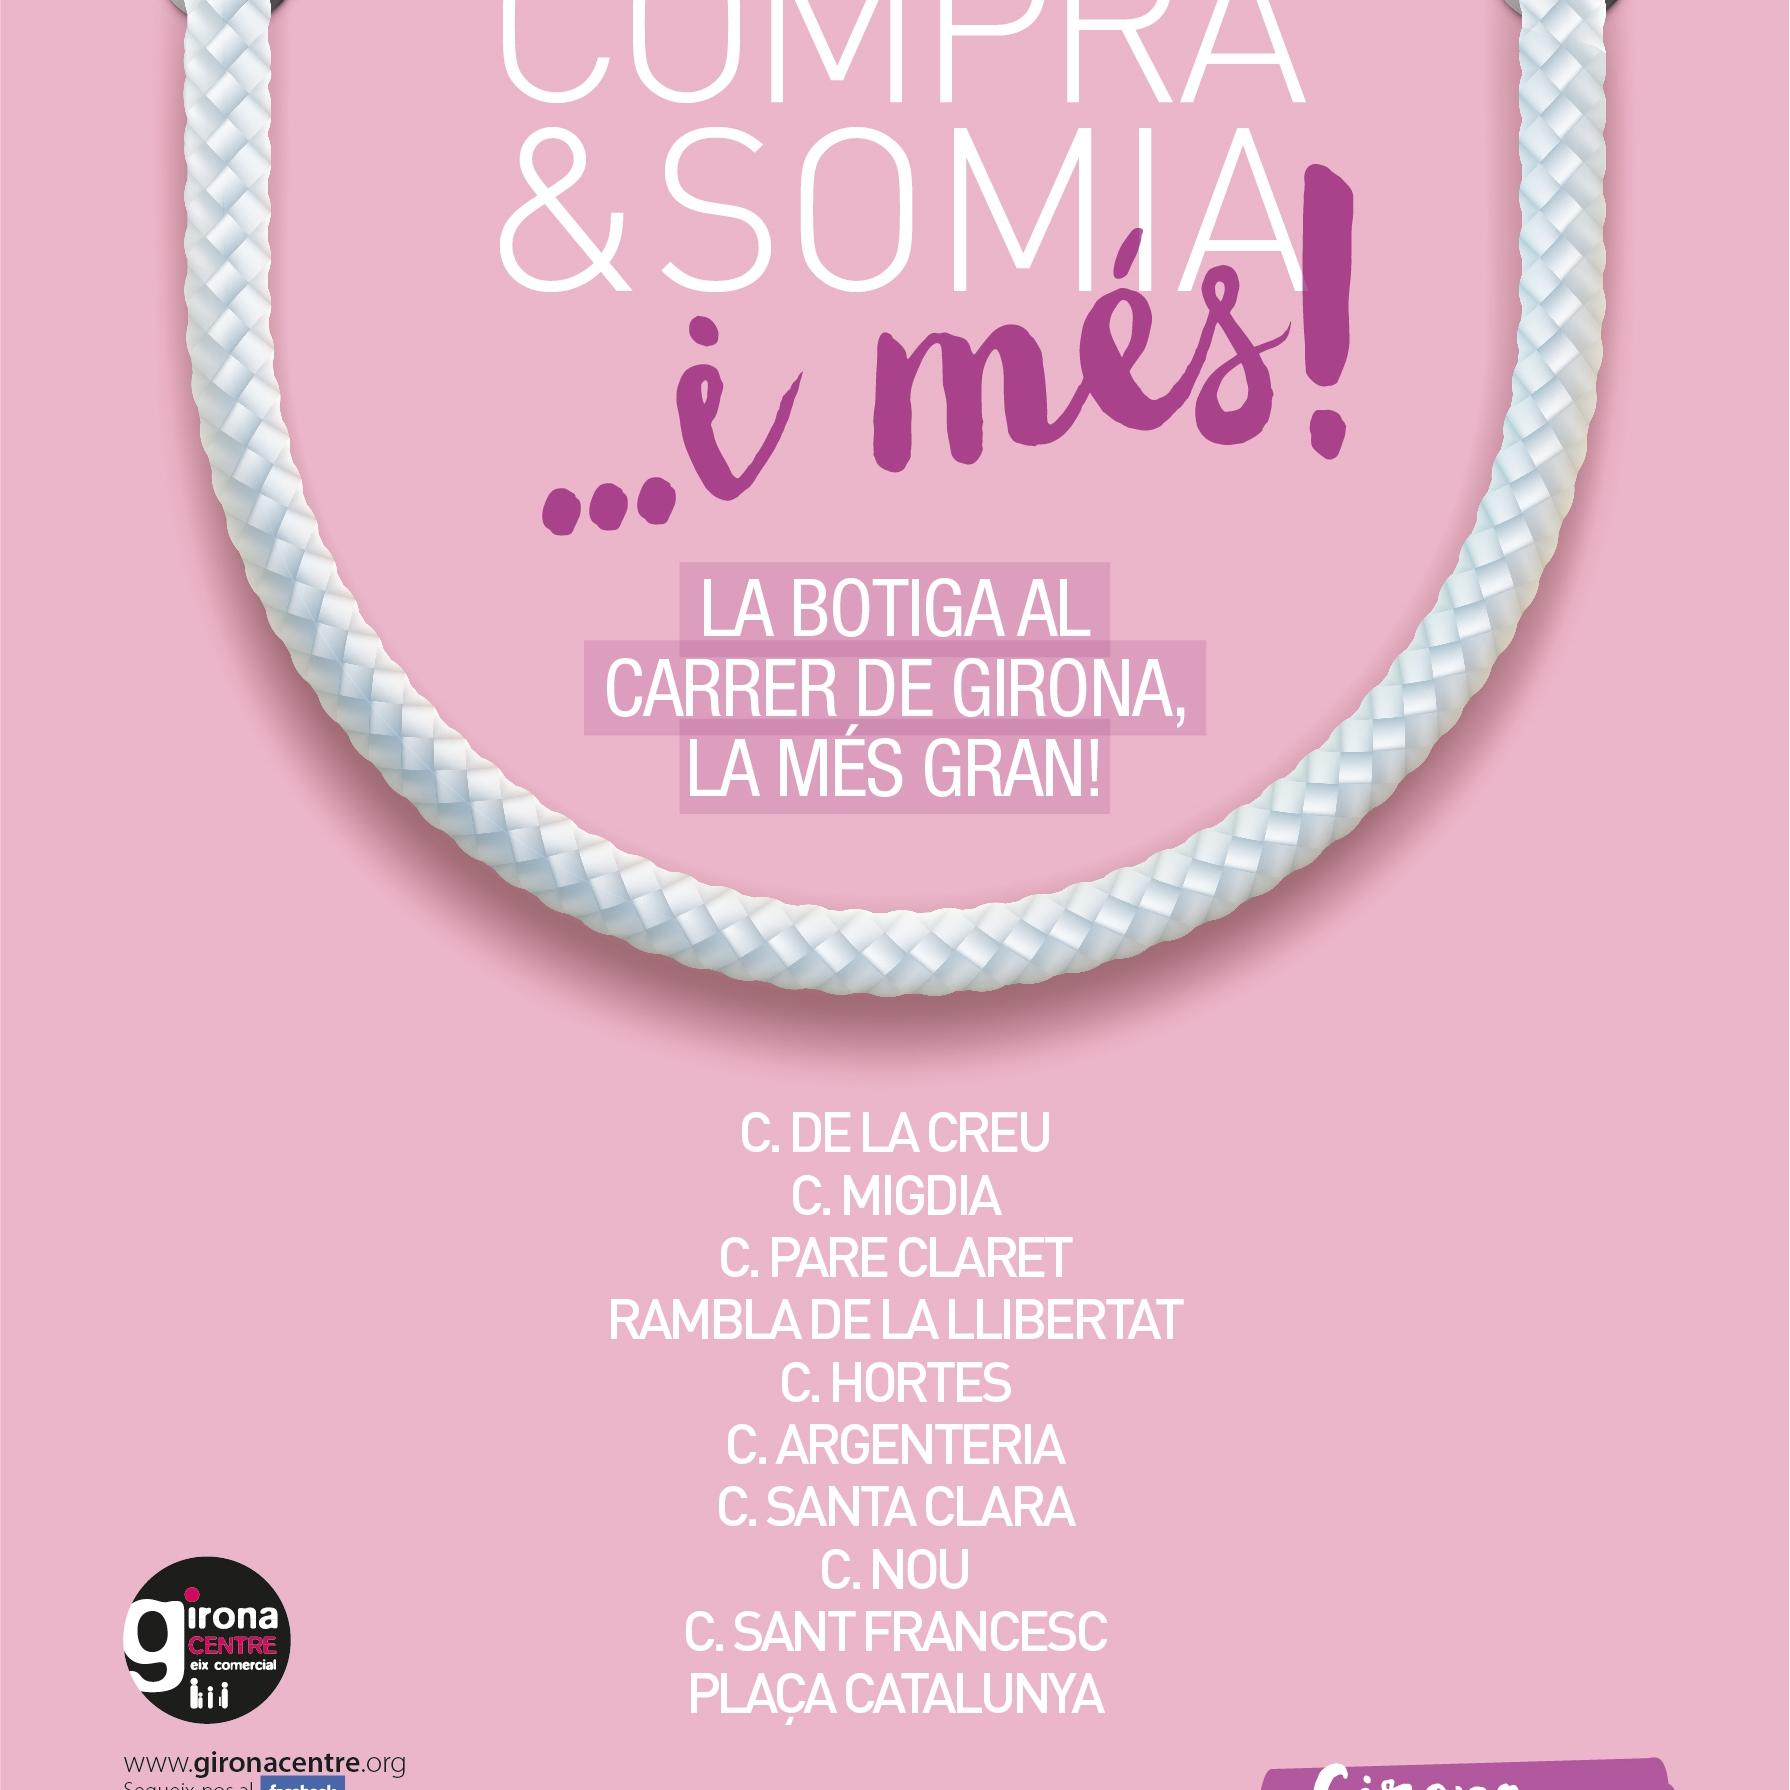 29 de setembre, V edició de Compra & Somia, la botiga al carrer de tot l’eix comercial de Girona